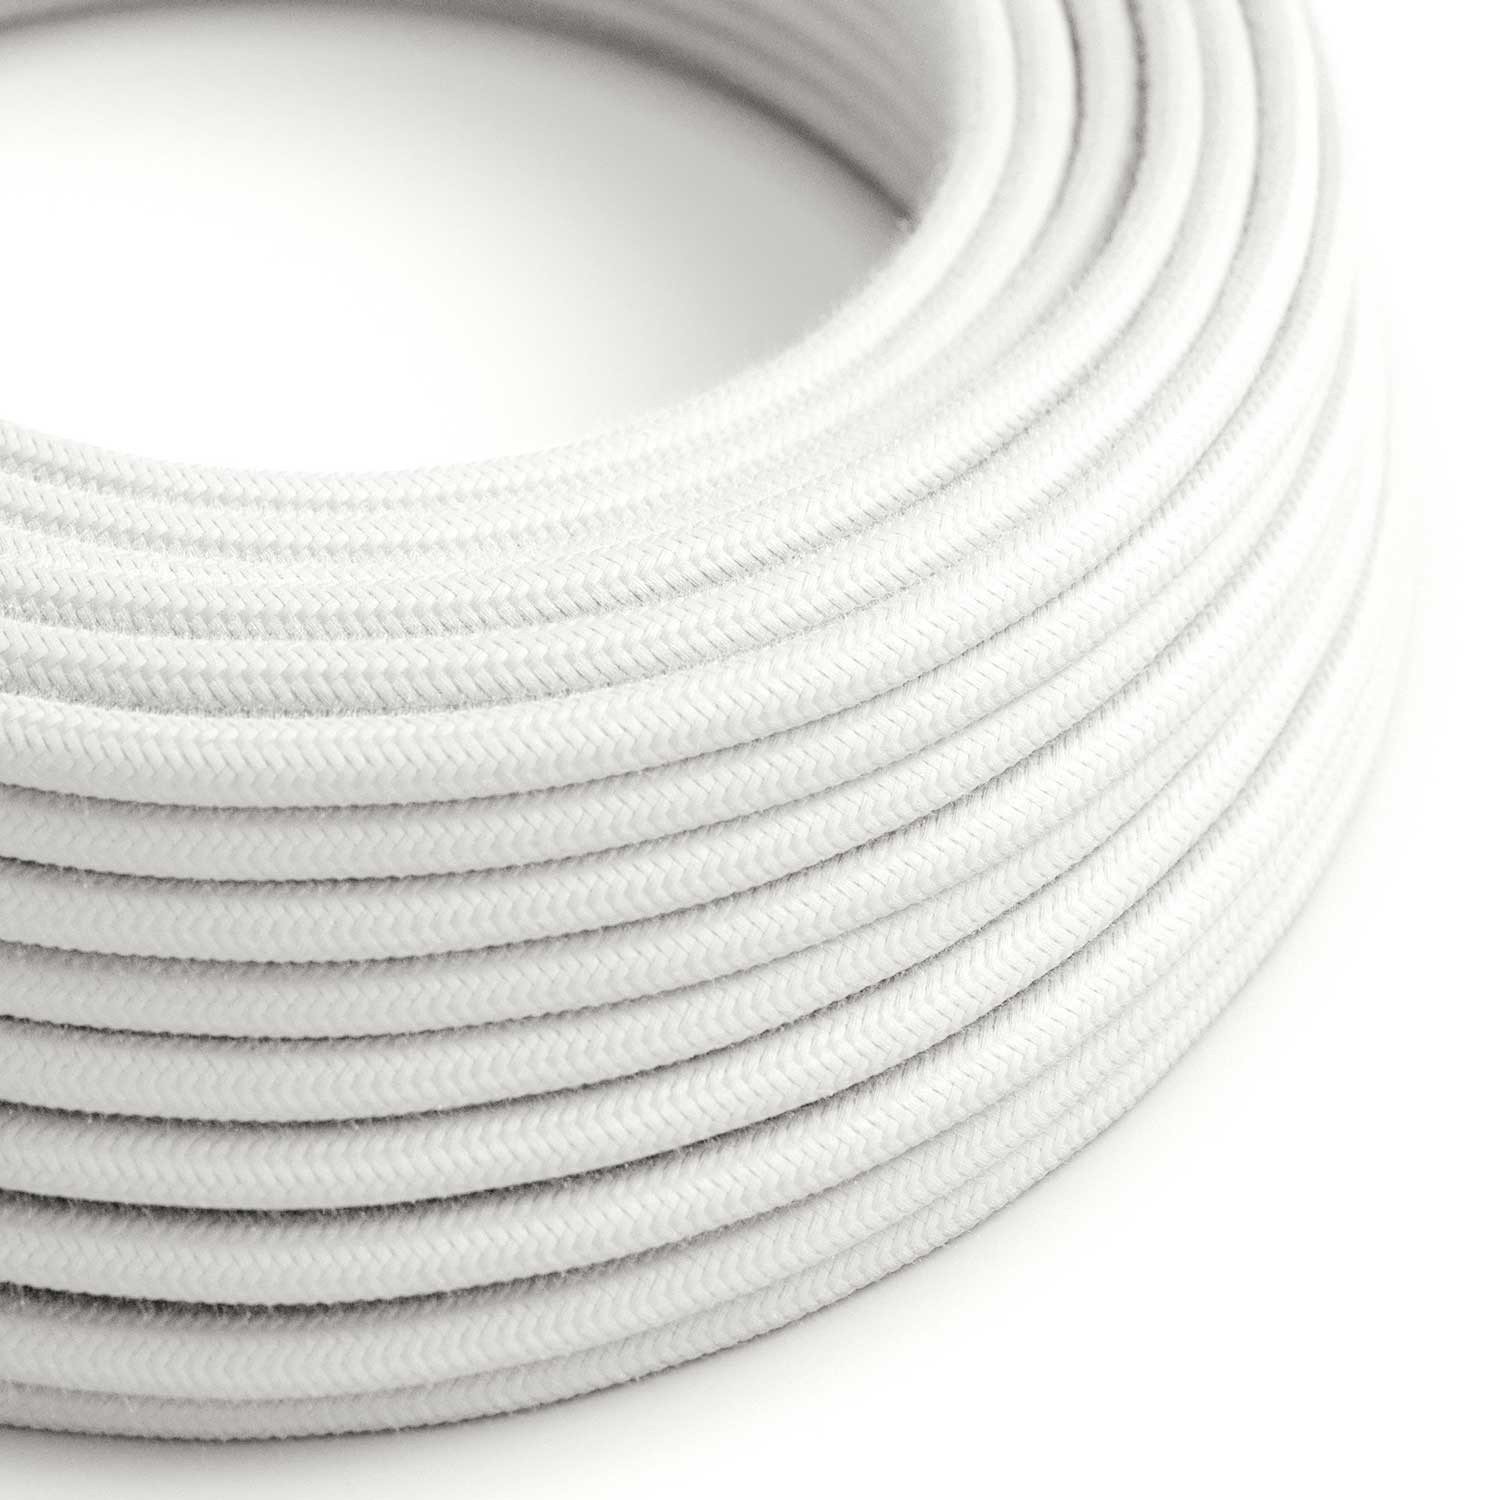 Ultra Zachte siliconen elektrische kabel met optische witte katoenen bekleding - RC01 rond 2x0,75 mm